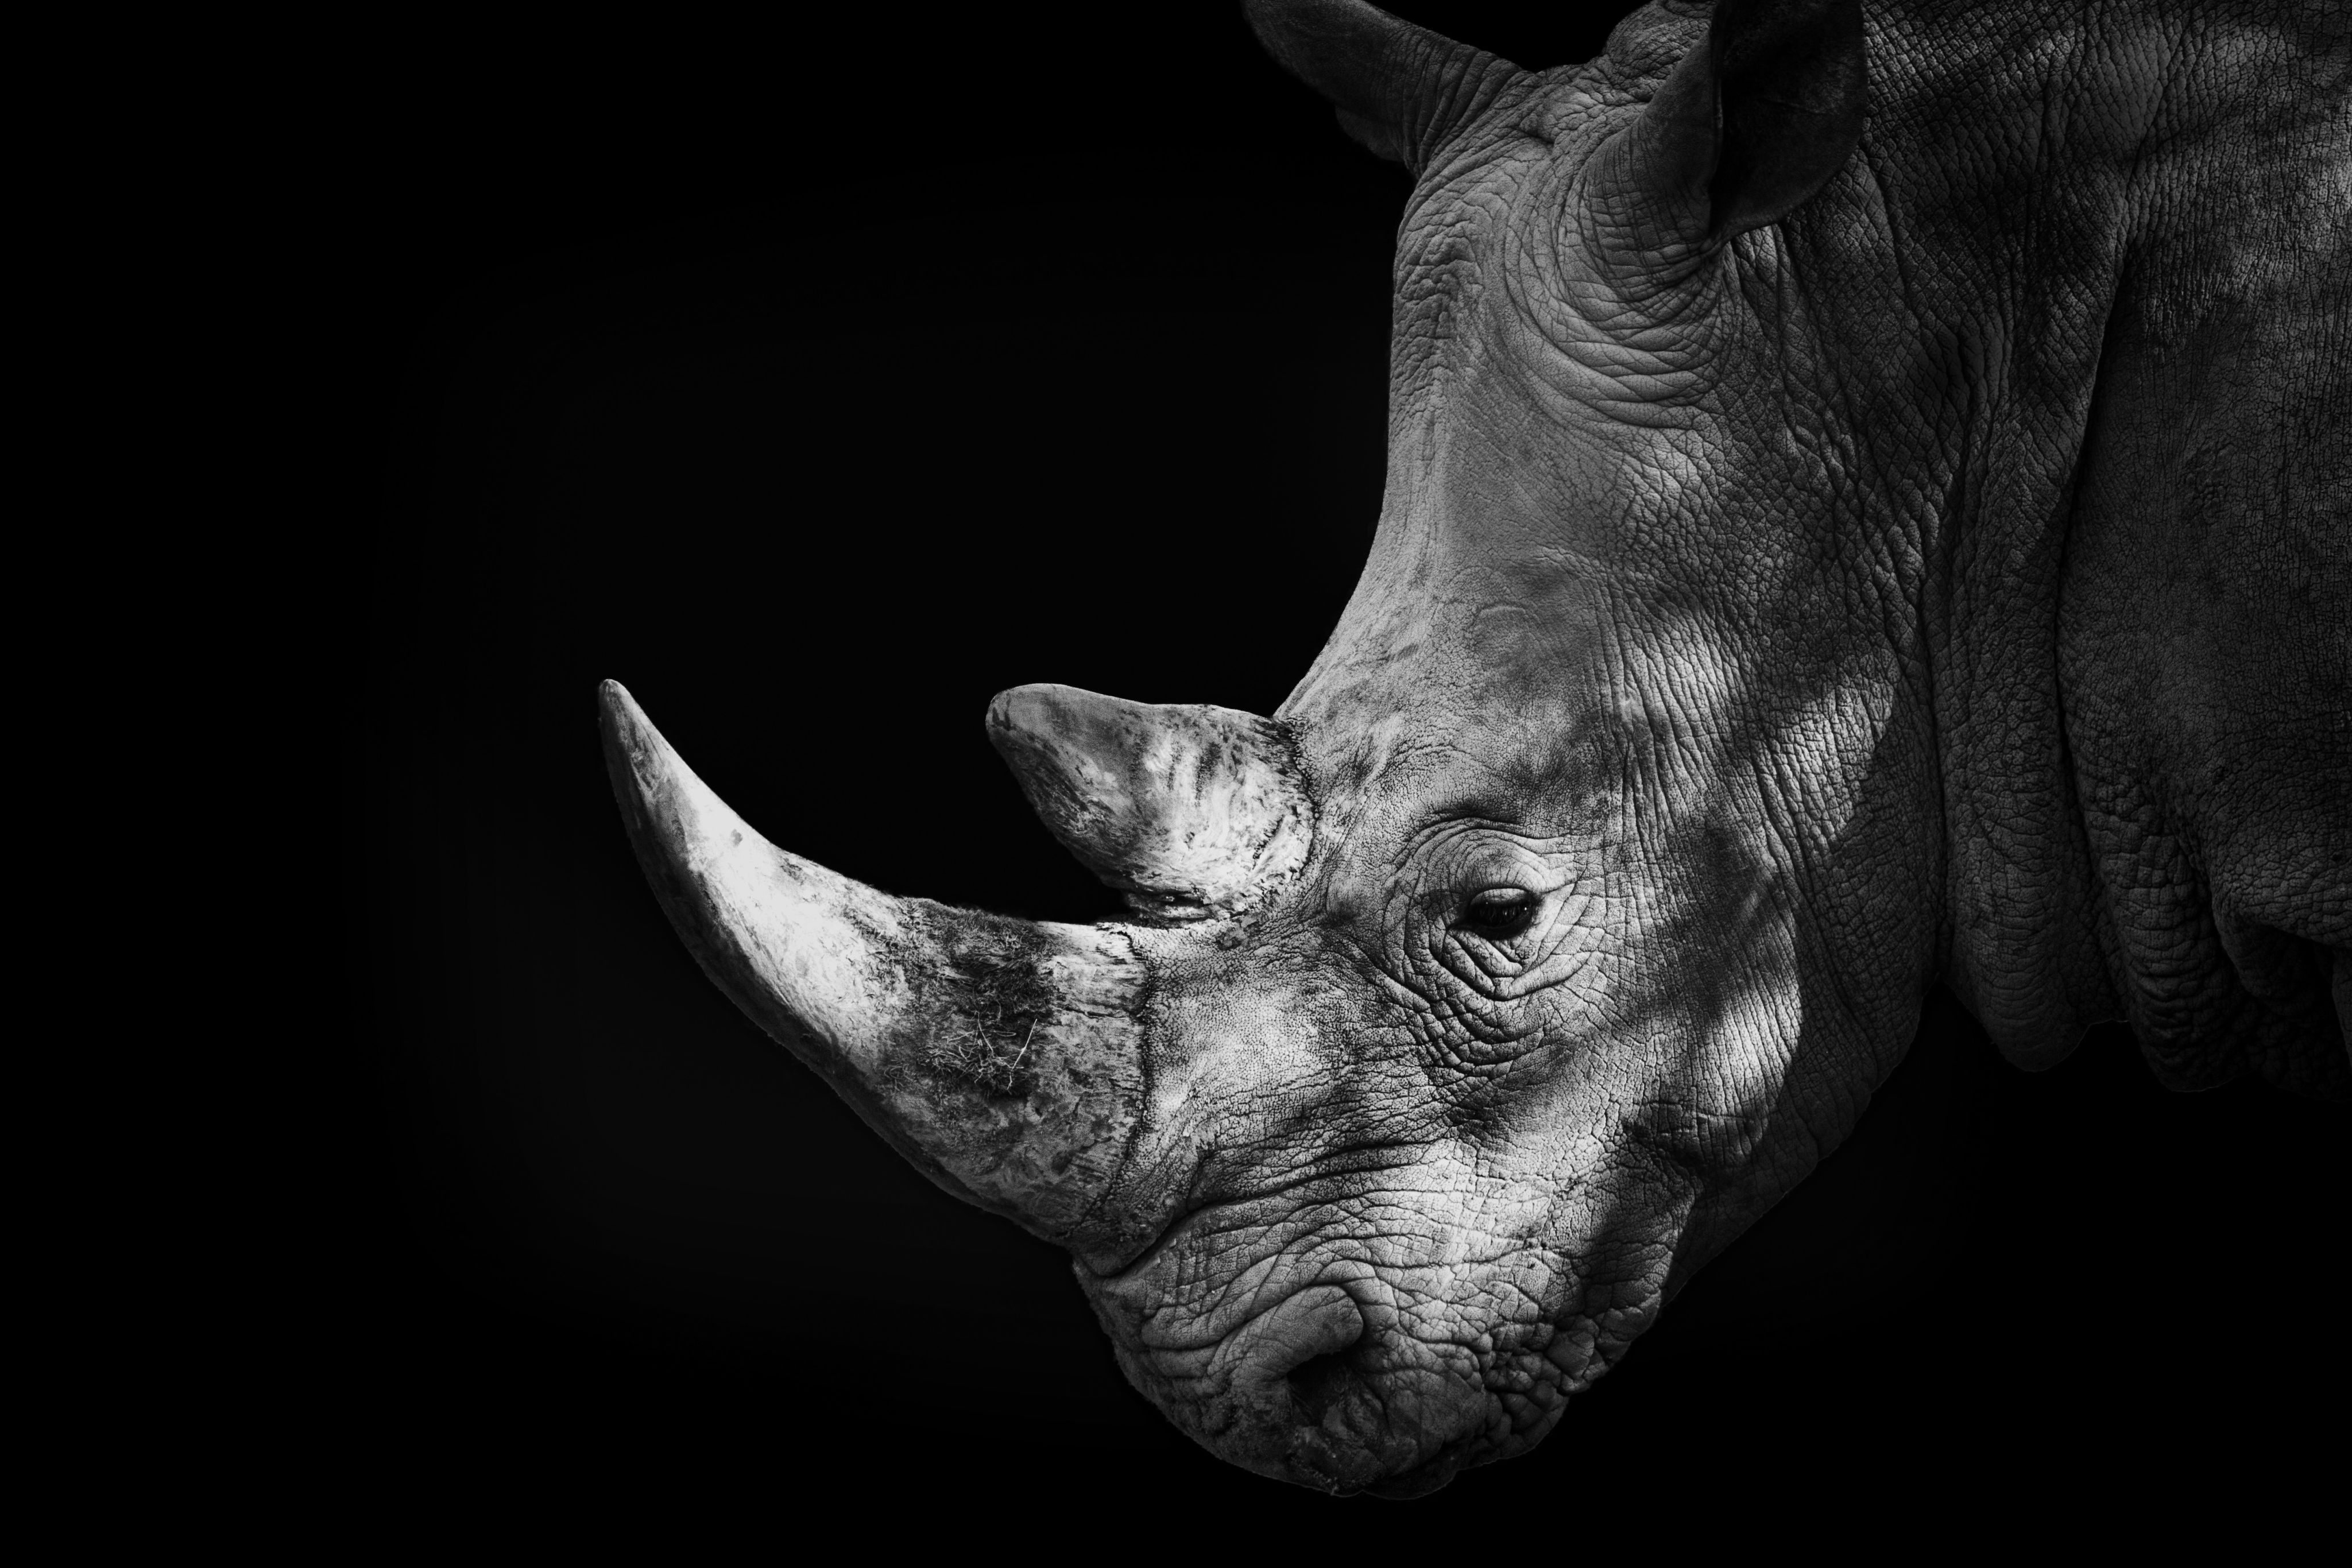 Rhino by Malcolm MacGregor, Getty